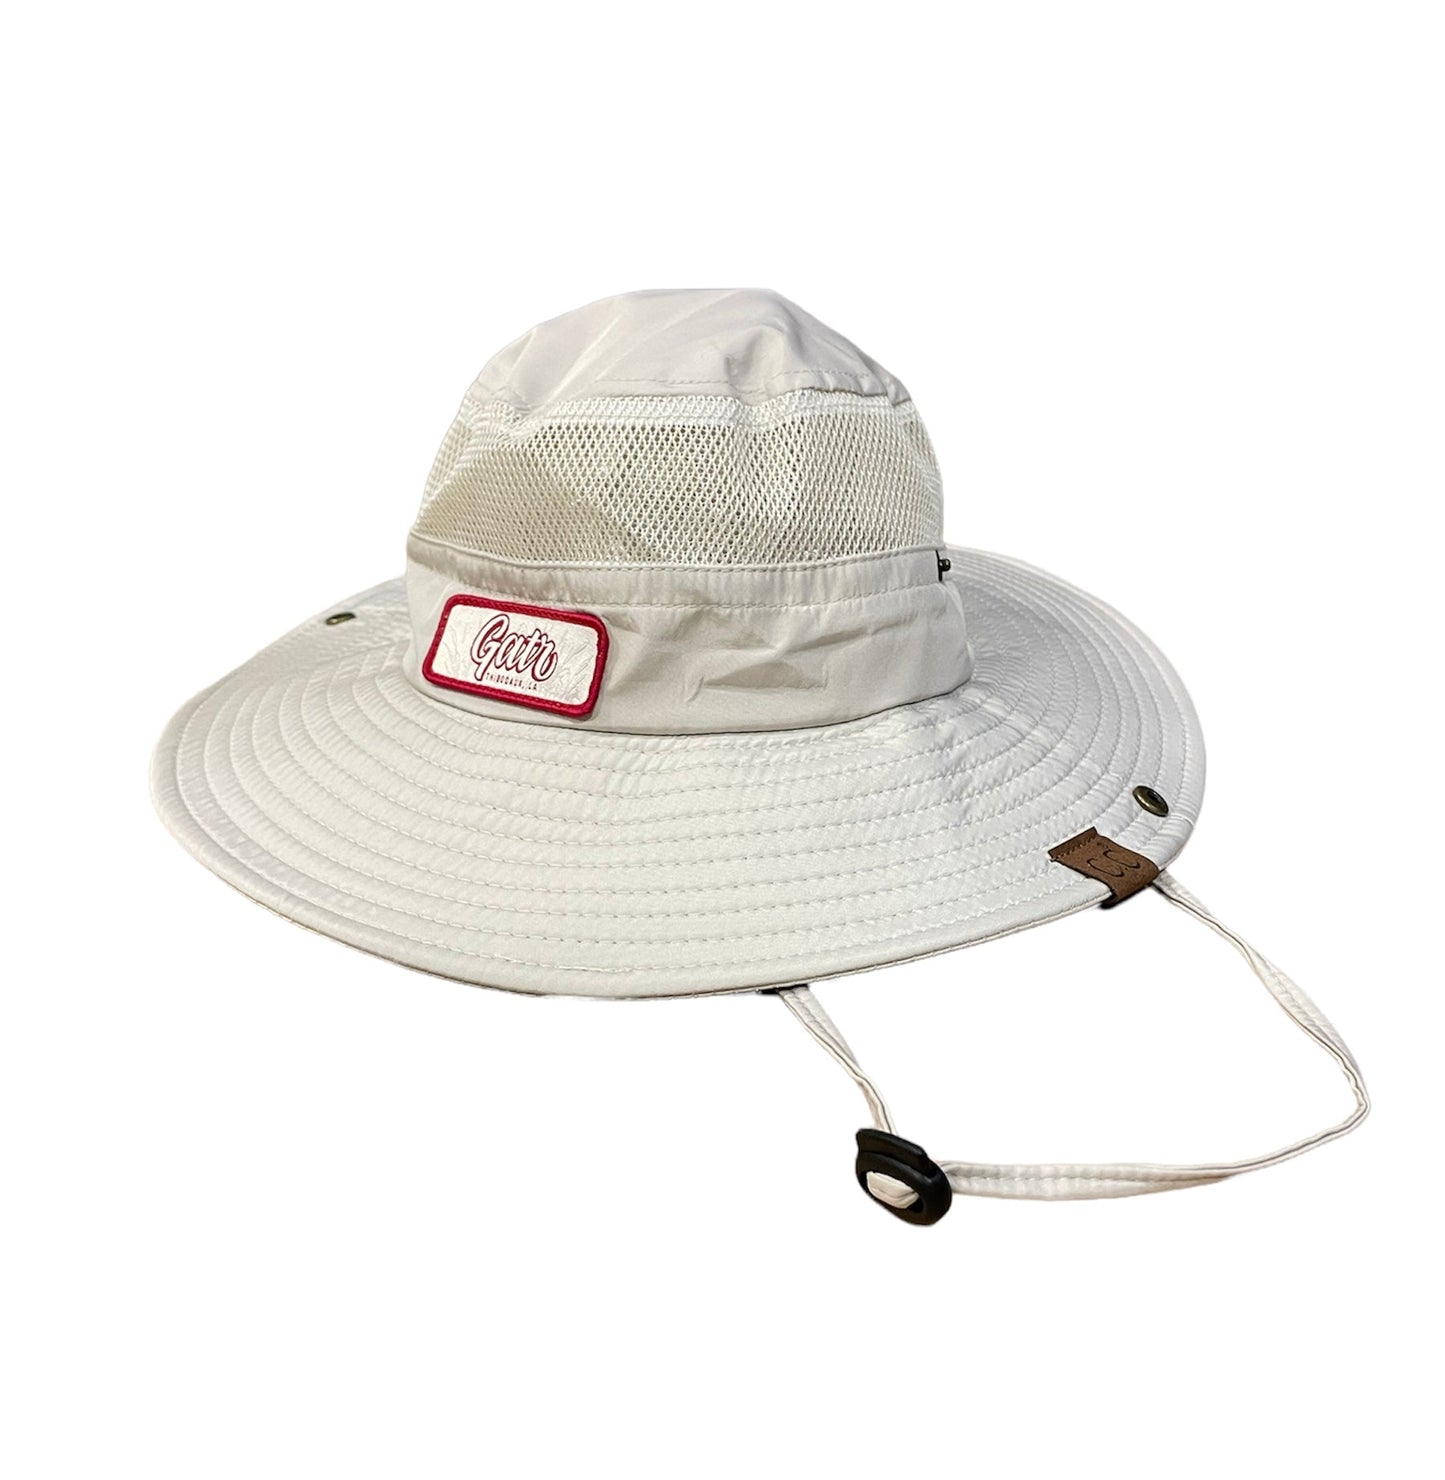 CC Beanie Wide Brim Sun Hats by GATR